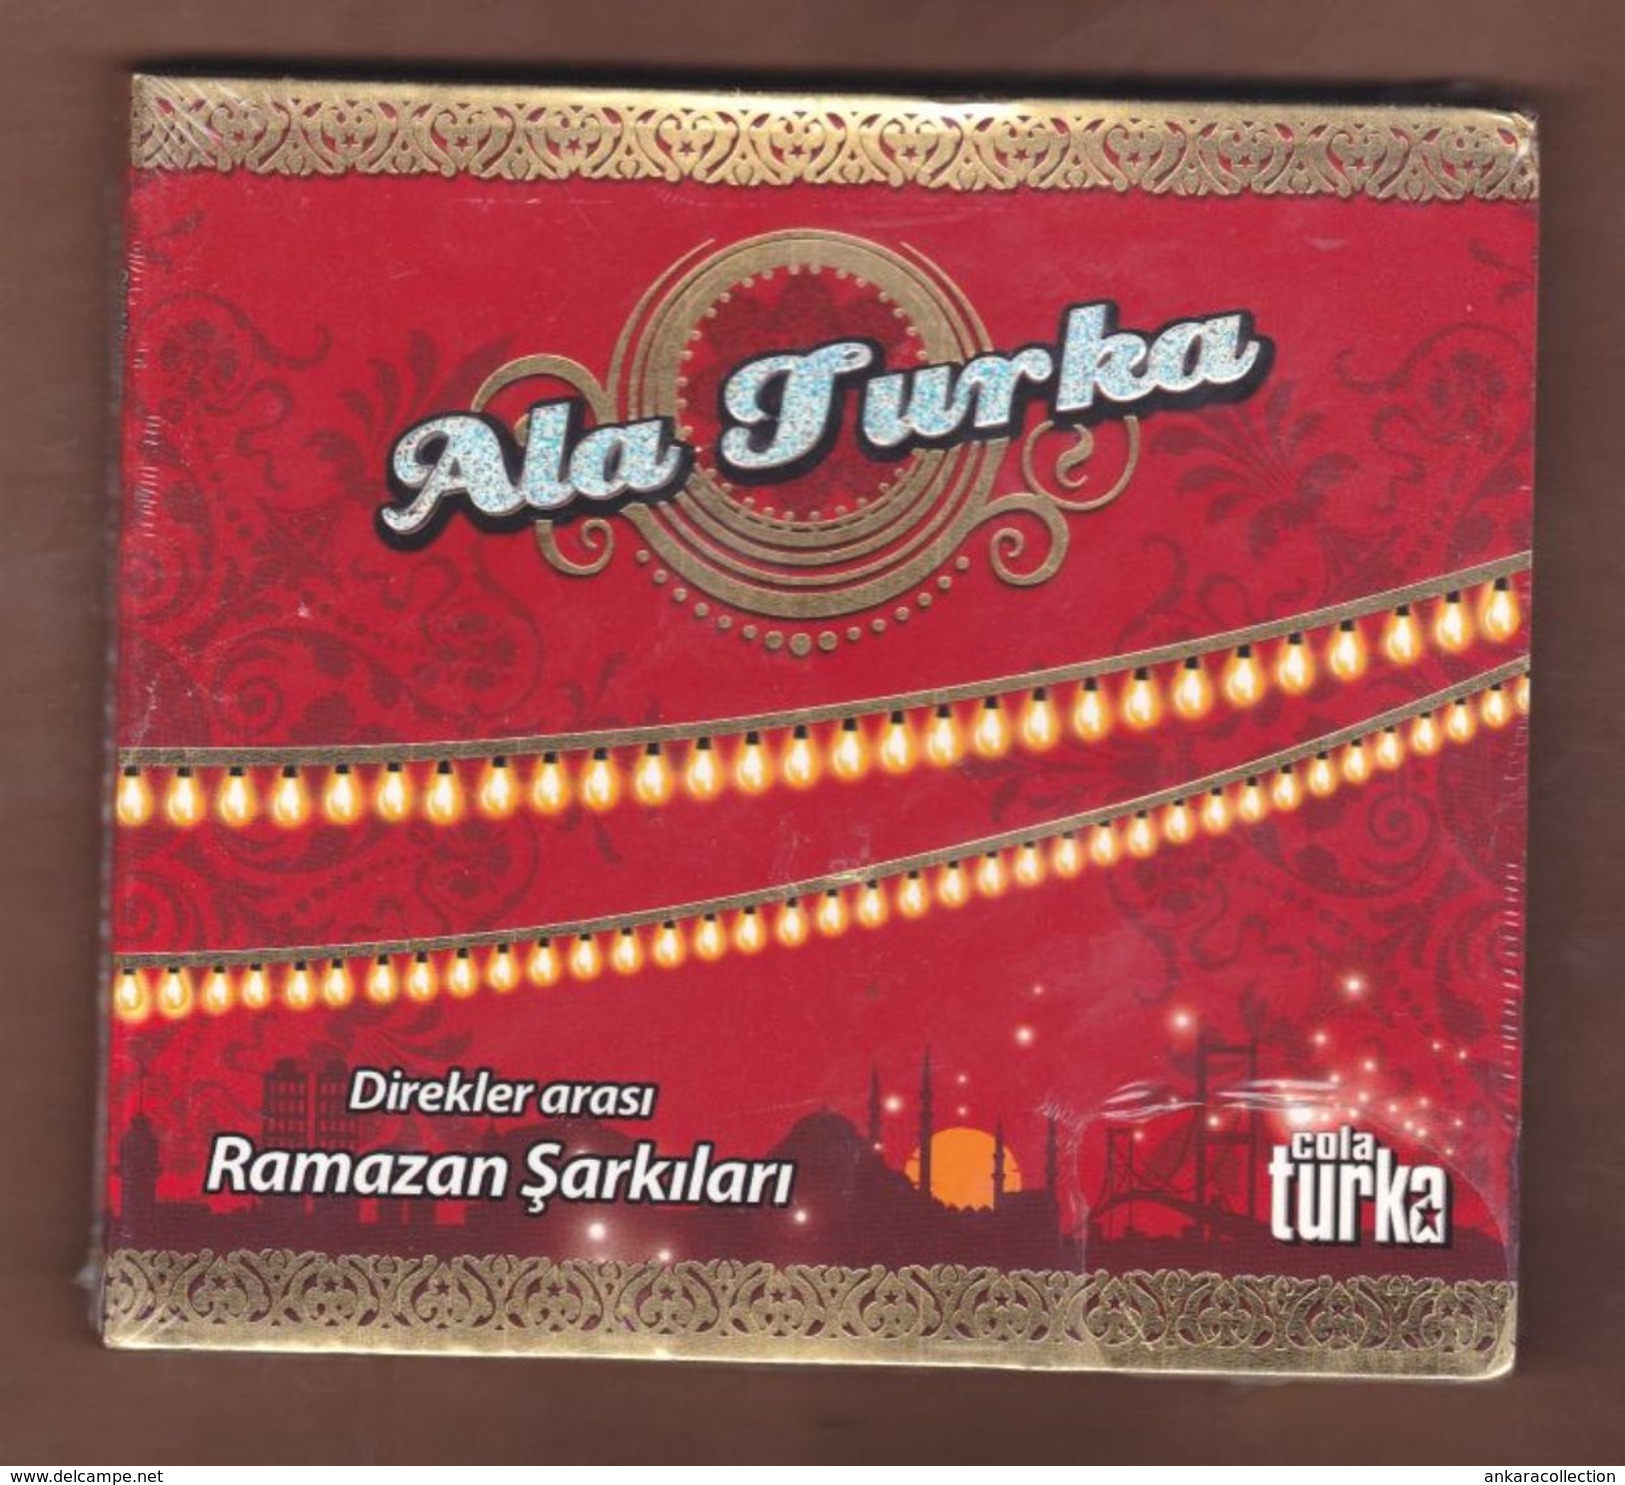 AC - Cola Turka Ala Turka Direkler Arası Ramazan şarkıları BRAND NEW TURKISH MUSIC CD - Musiques Du Monde